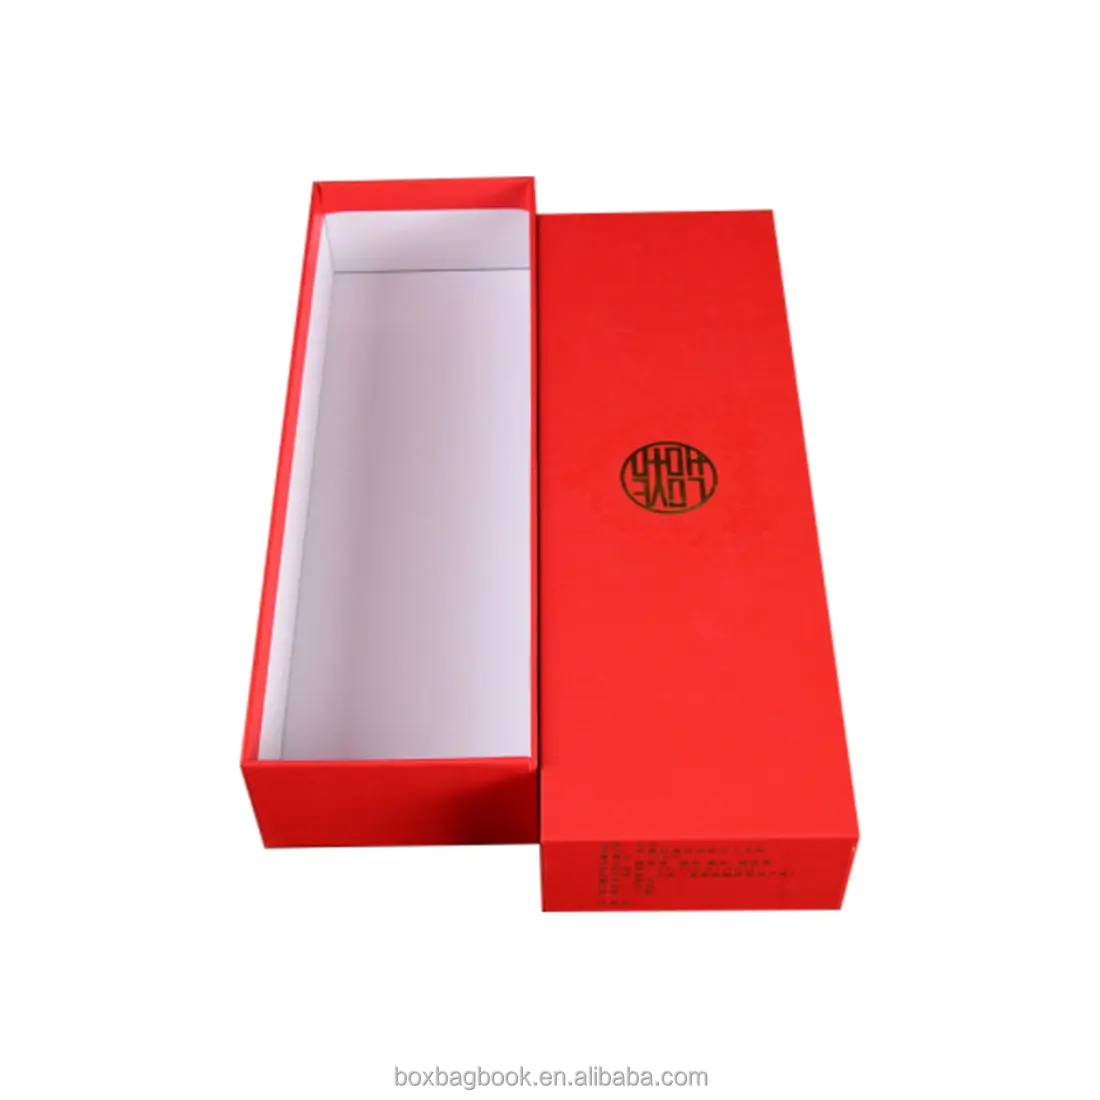 Rekabetçi fiyat kraft kağıt nakliye kutusu özel boyutta logo baskılı kaplamalı karton kutu hediyelik sabun mum diş macunu ambalaj kutusu